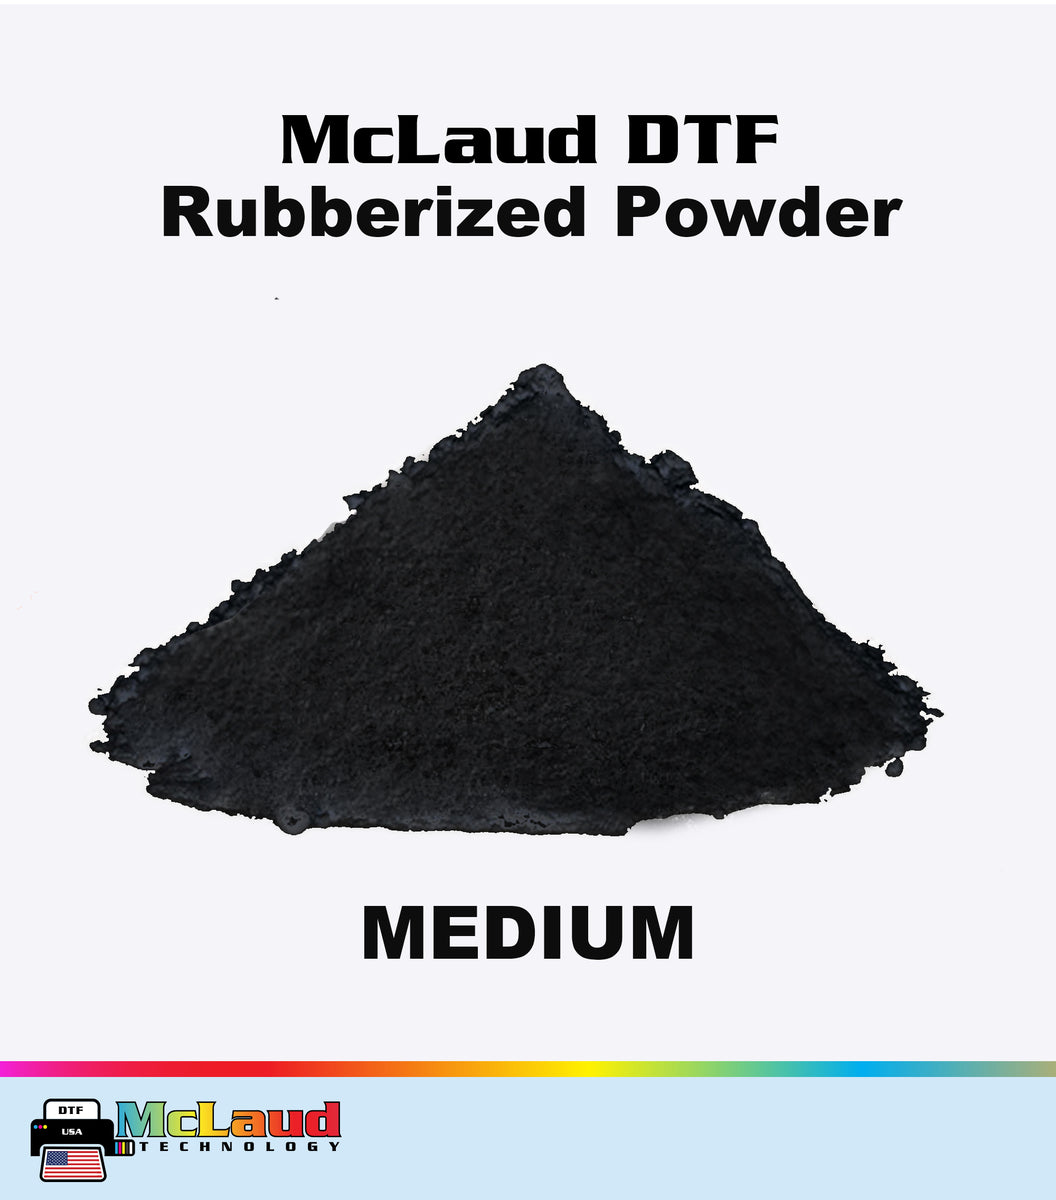 DTF - HOT MELT POWDER-BLACK 1kg (2.2lb)